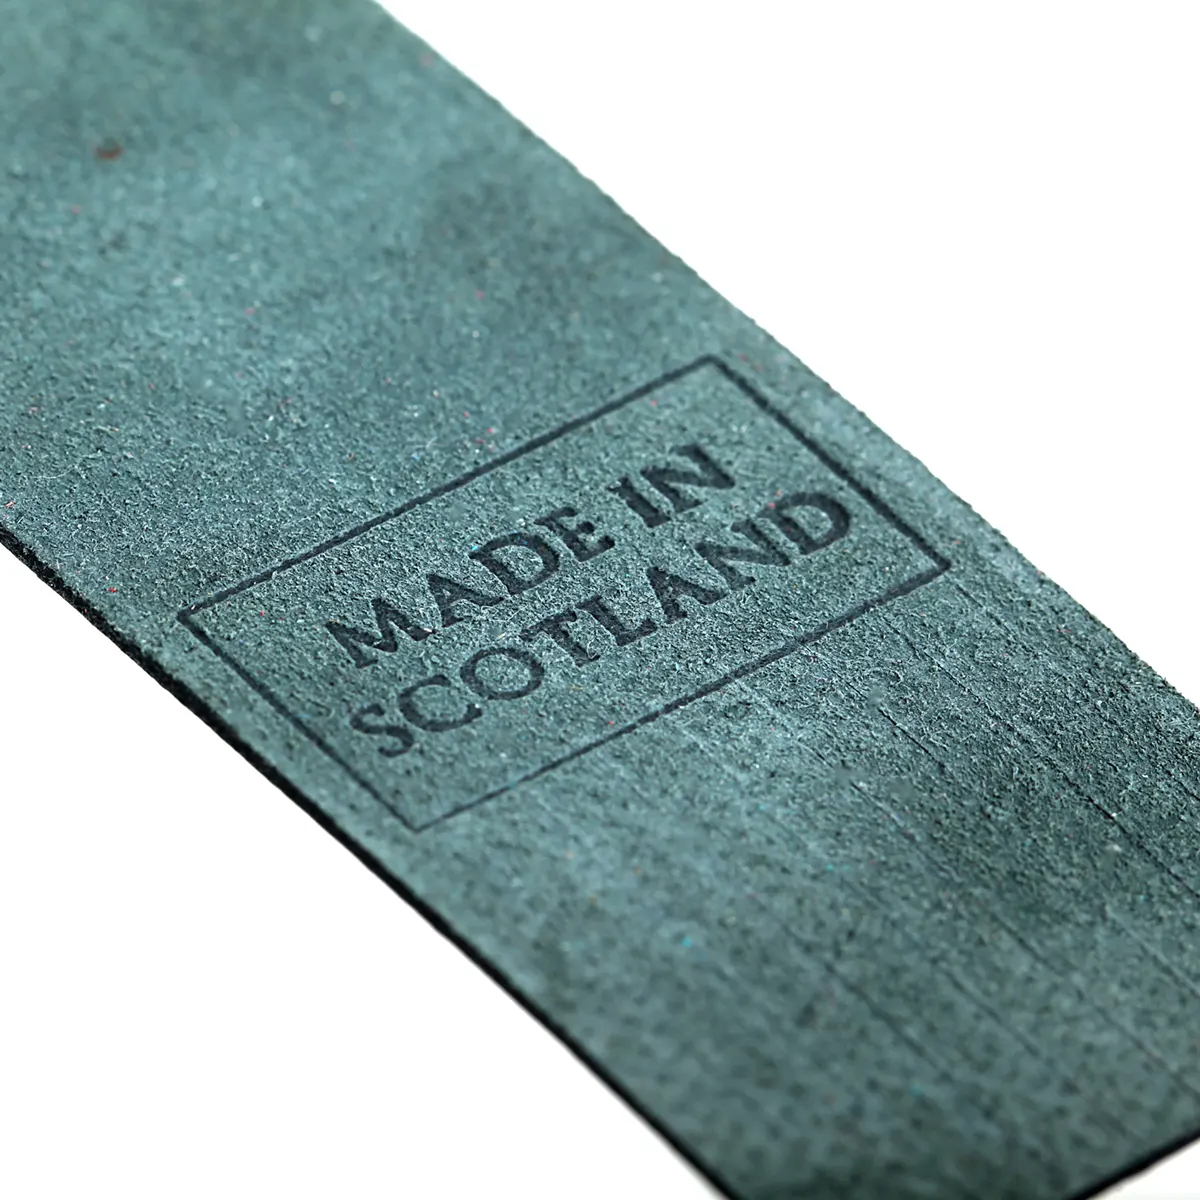 Loch Ness - Leder Lesezeichen aus Schottland in Dunkelgrün - Made in Scotland